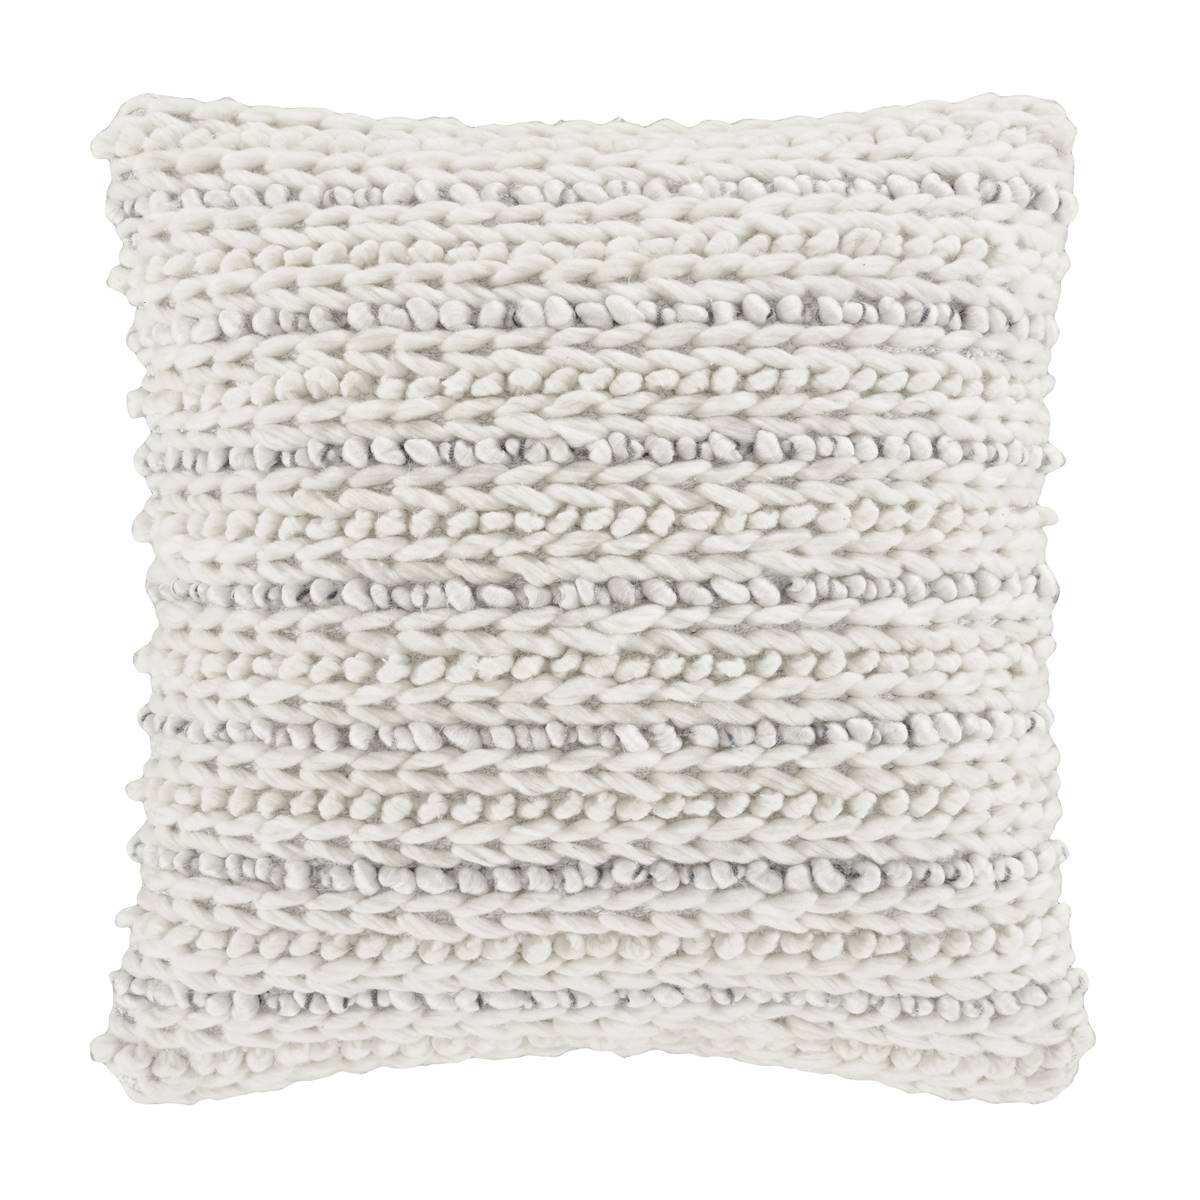 White Sand Haven Decorative Throw Pillow - 18x18